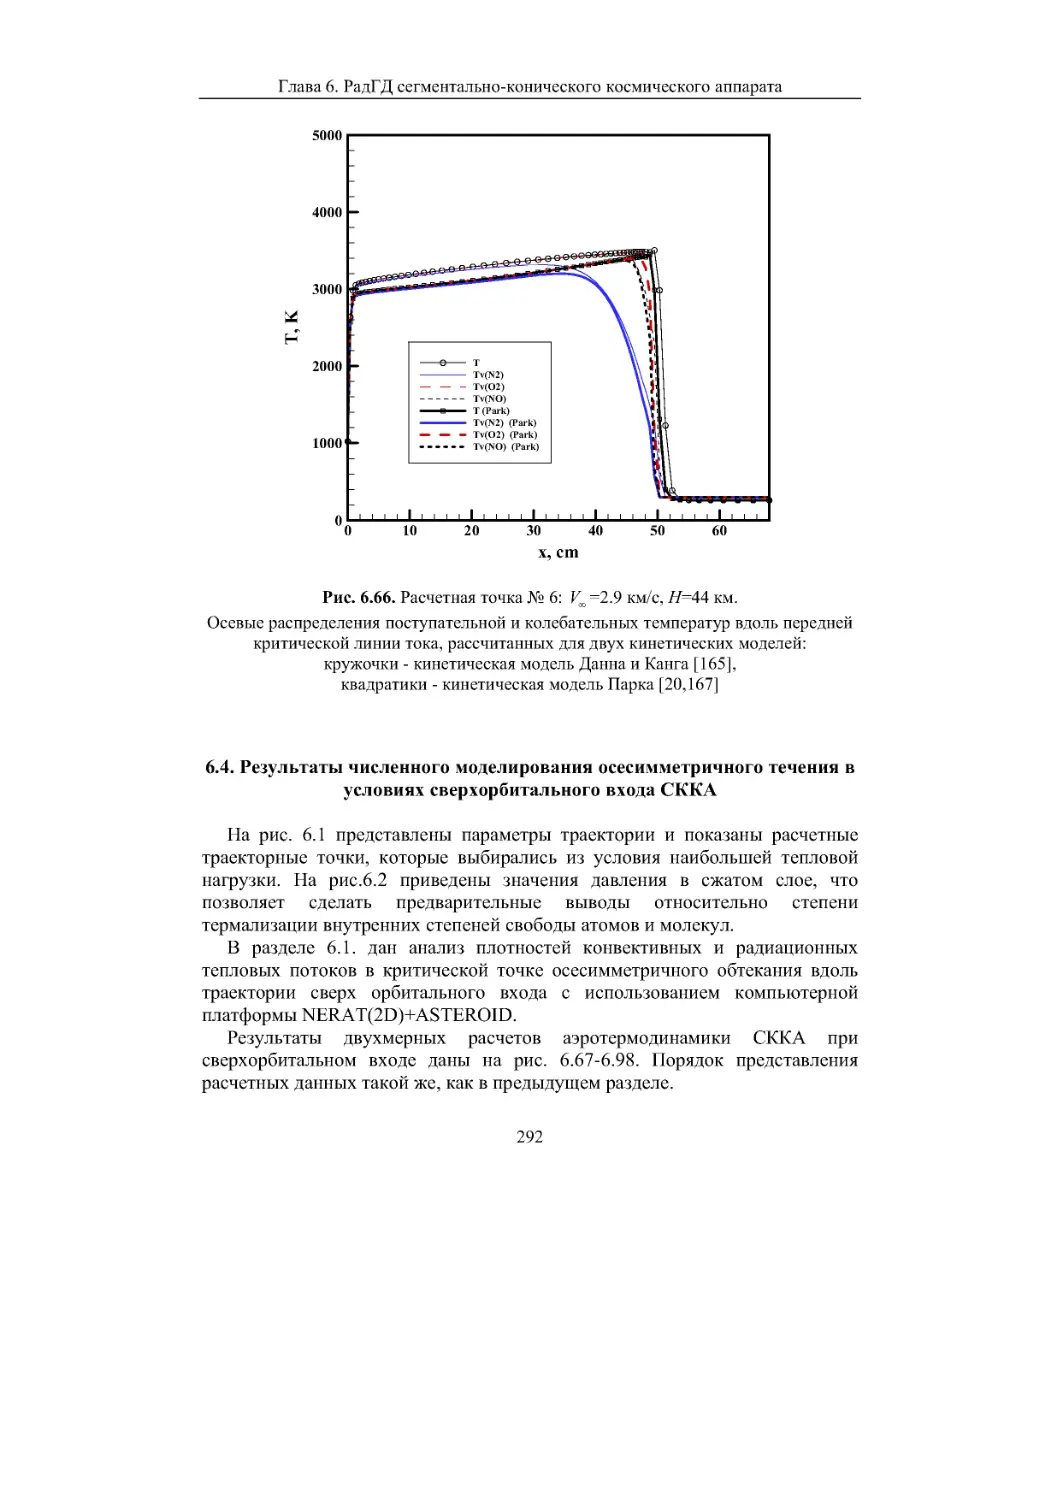 6.4. Результаты численного моделирования осесимметричного течения в условиях сверхорбитального входа СККА